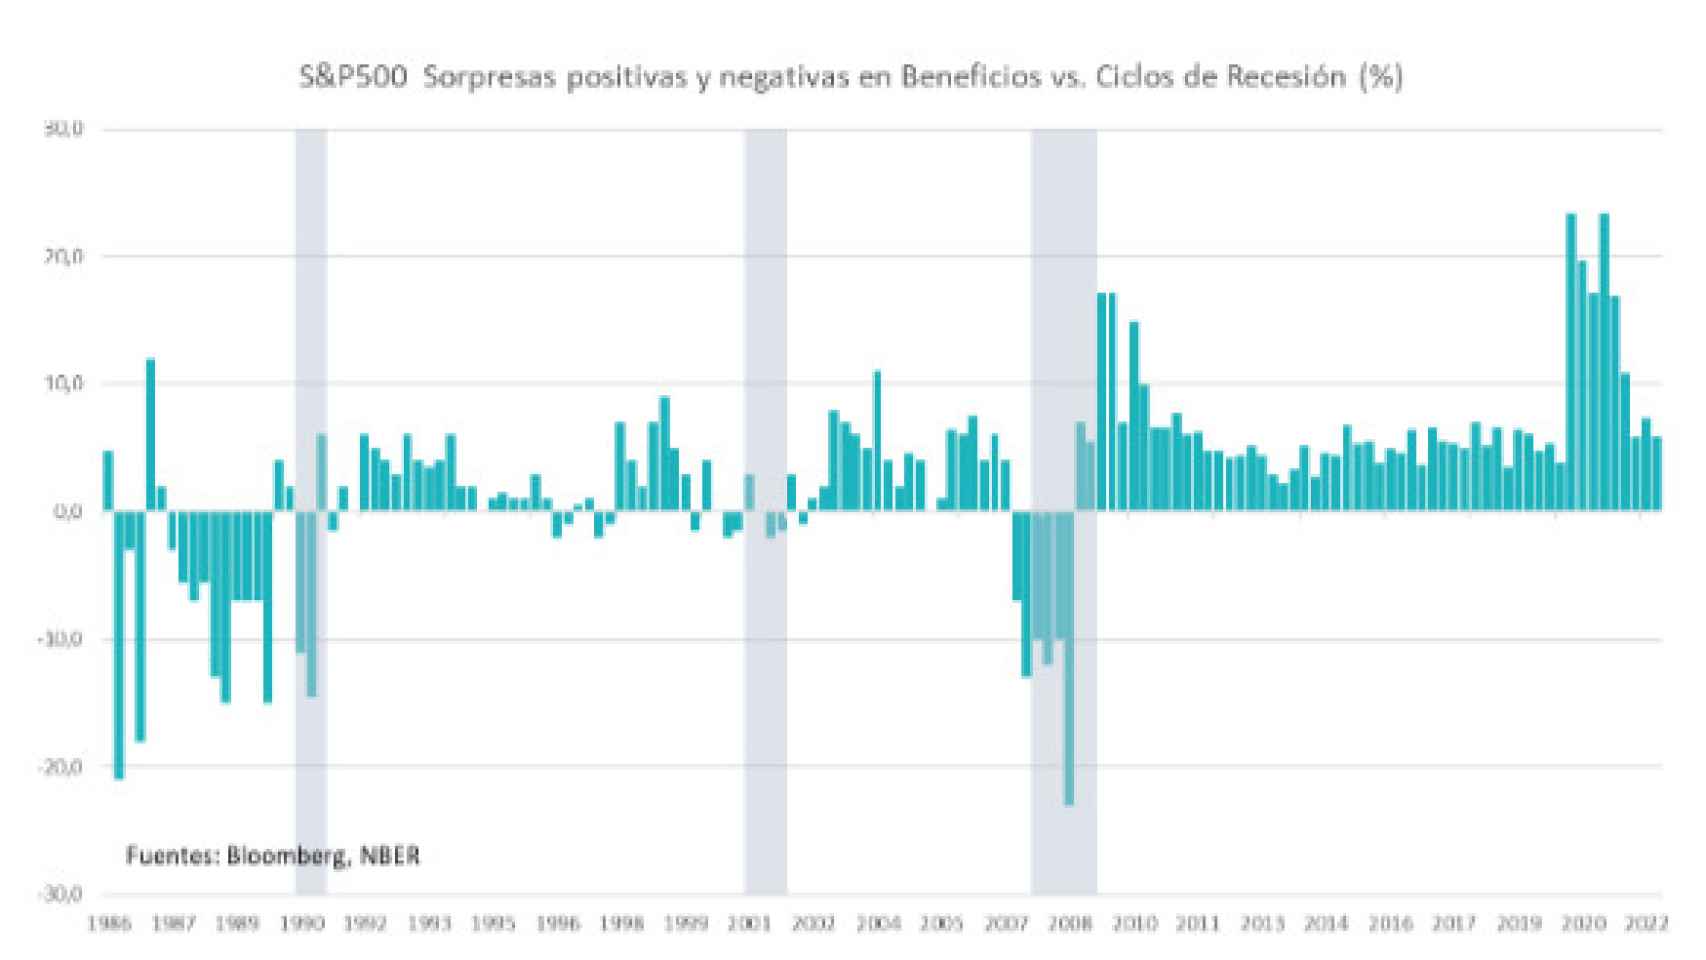 Sorpresas positivas y negativas en beneficios vs. ciclos de recesión (%).